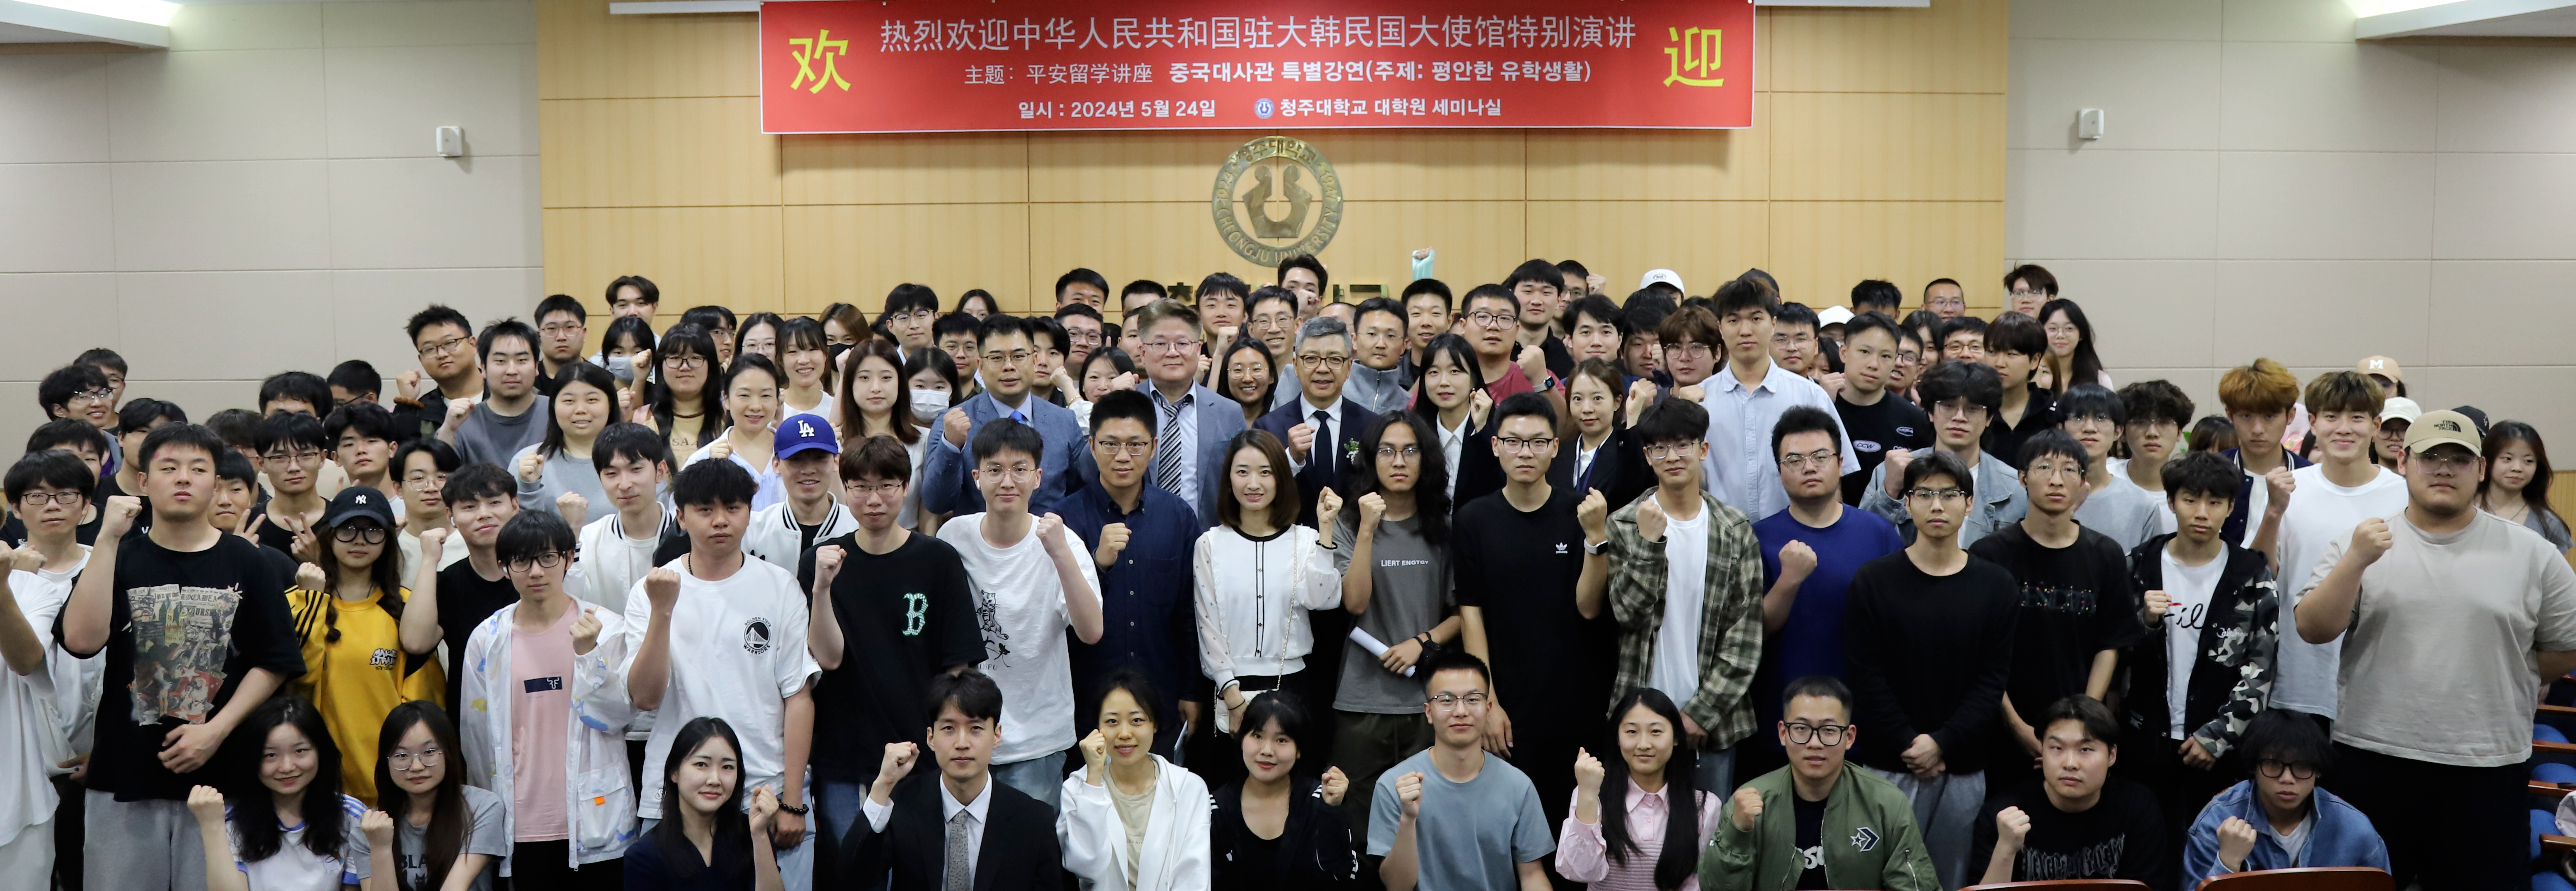 애홍가(艾宏歌) 교육공사와 왕리웨이(王立威) 3등서기관이 24일 특강을 마친 뒤 참석한 학생들과 단체사진을 촬영했다.